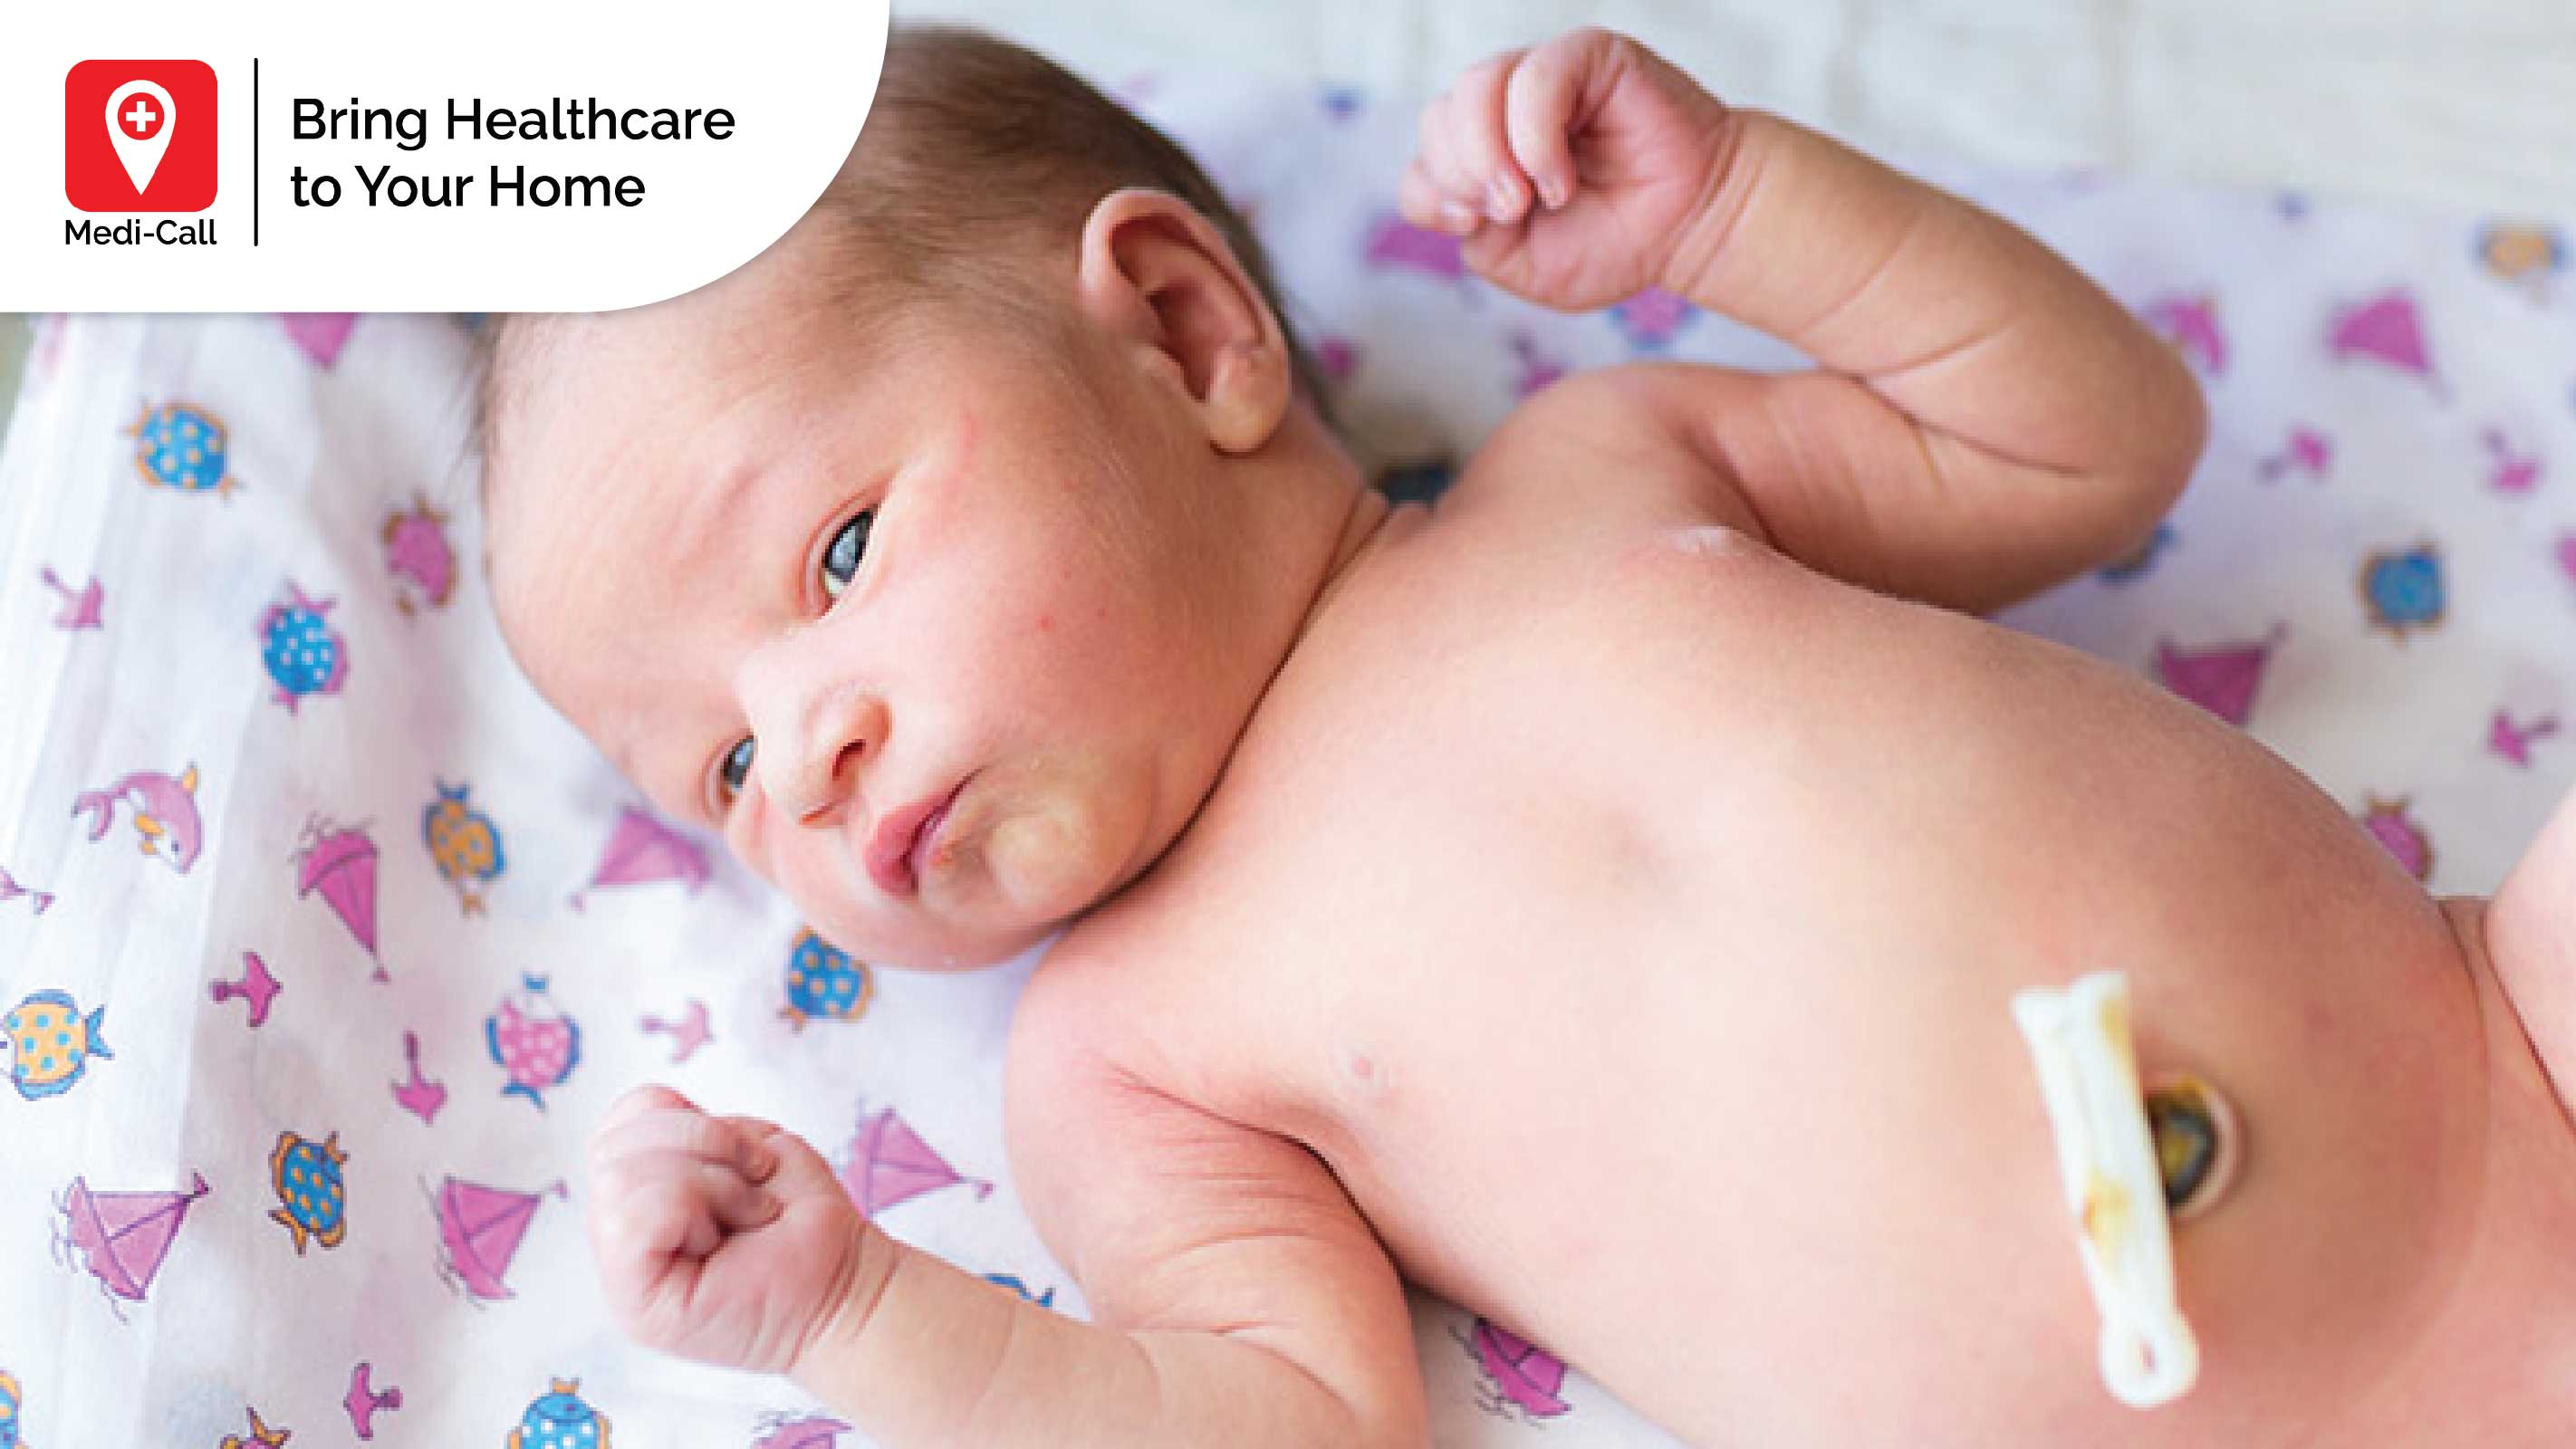 cara merawat tali pusat bayi baru lahir, perawat bayi baru lahir, baby care, cara merawat bayi baru lahir, medi-call, medicall